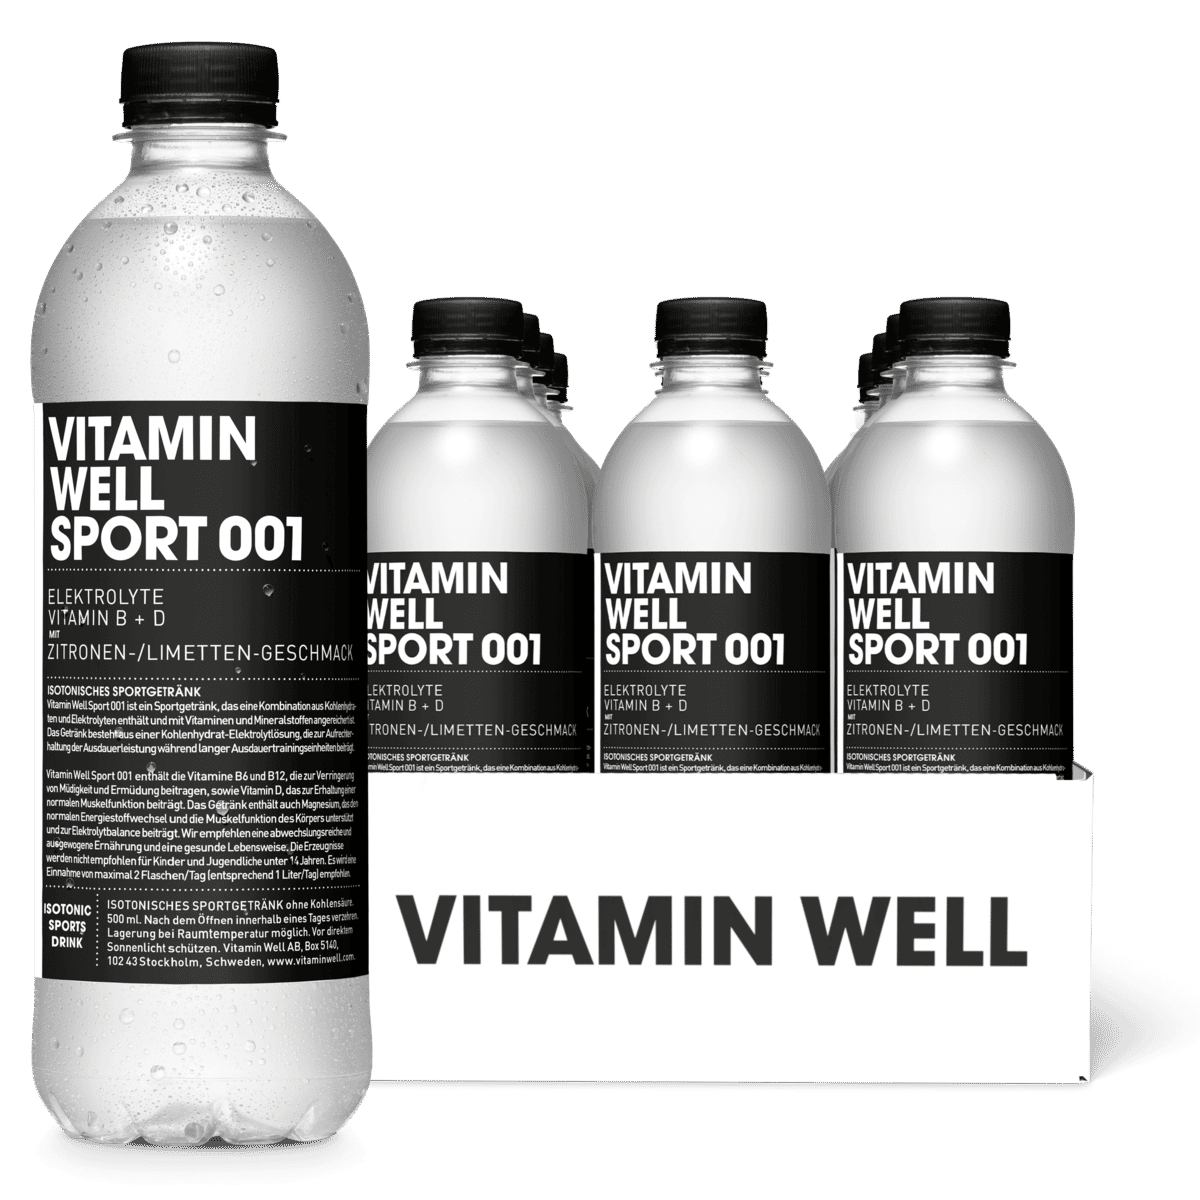 Vitamin Well sport 001 packshot